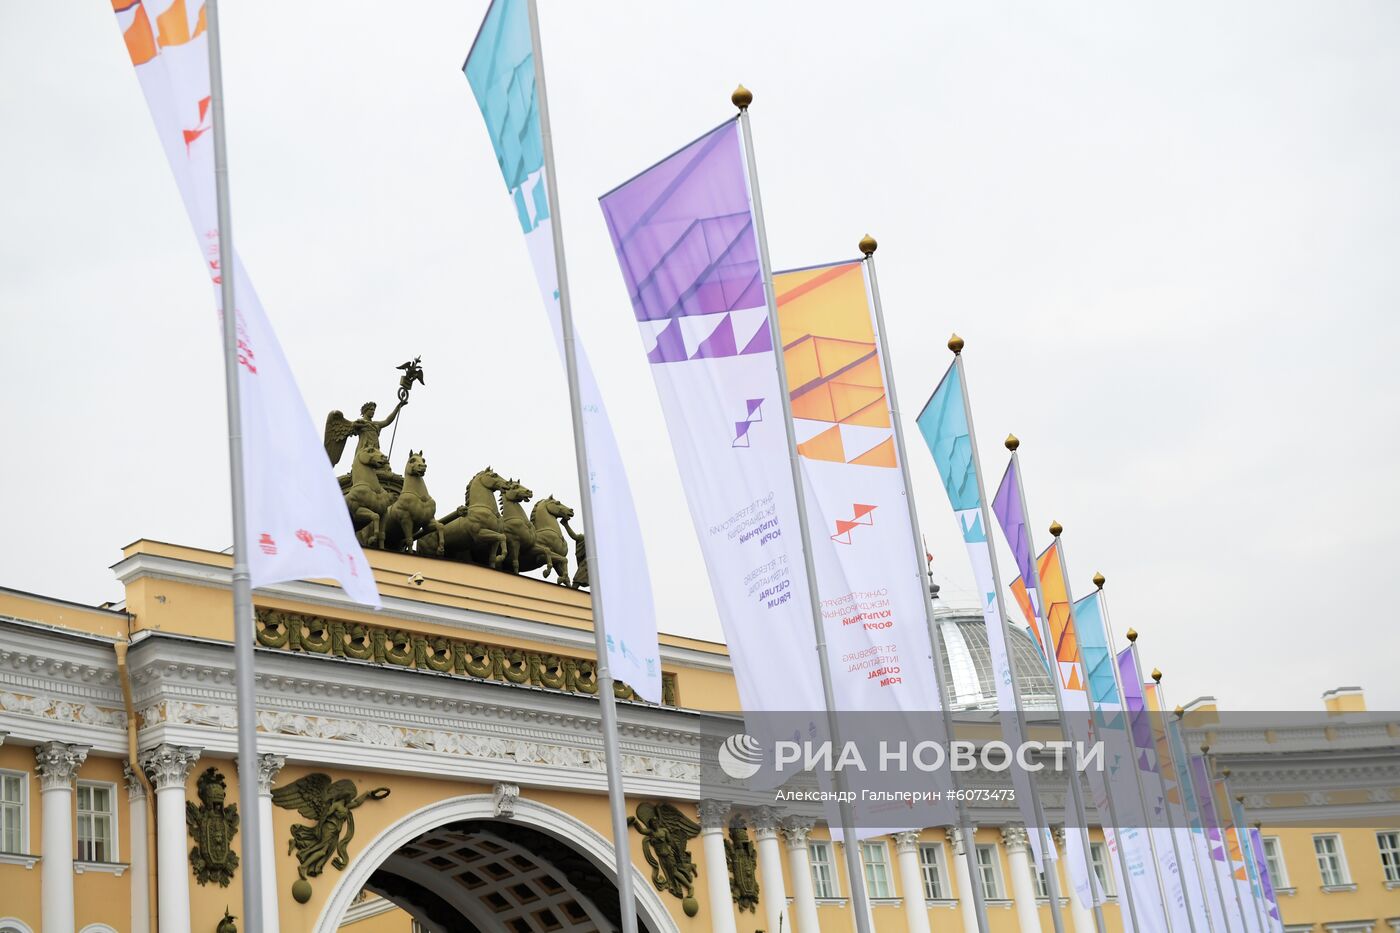 Международный культурный форум в Санкт-Петербурге